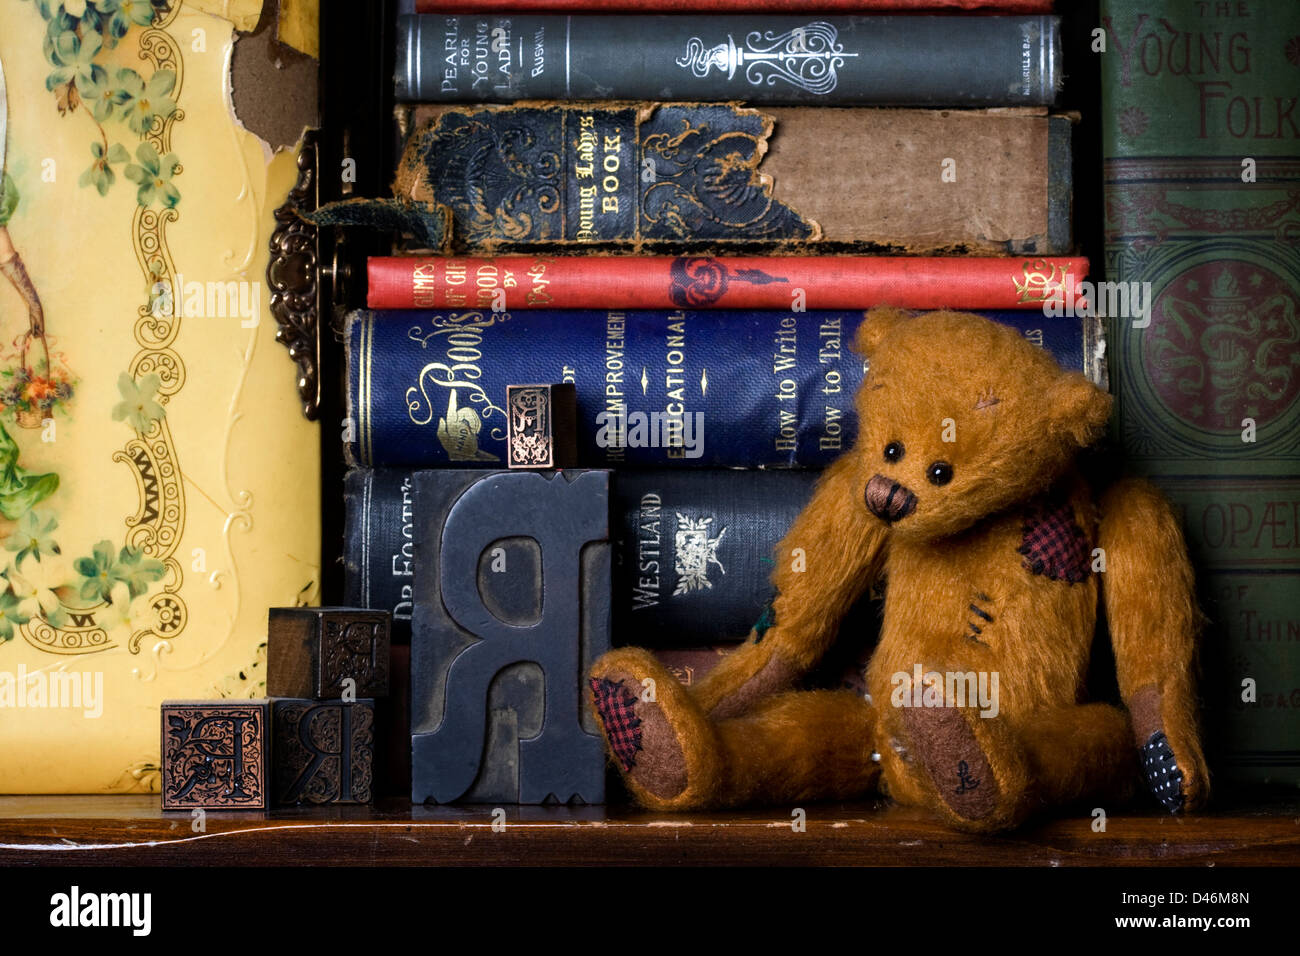 Une bibliothèque dotée d''une vie encore ours articulé, antique lettre Appuyez sur les lettres, les vieux livres et un album photo de l'époque victorienne. Banque D'Images